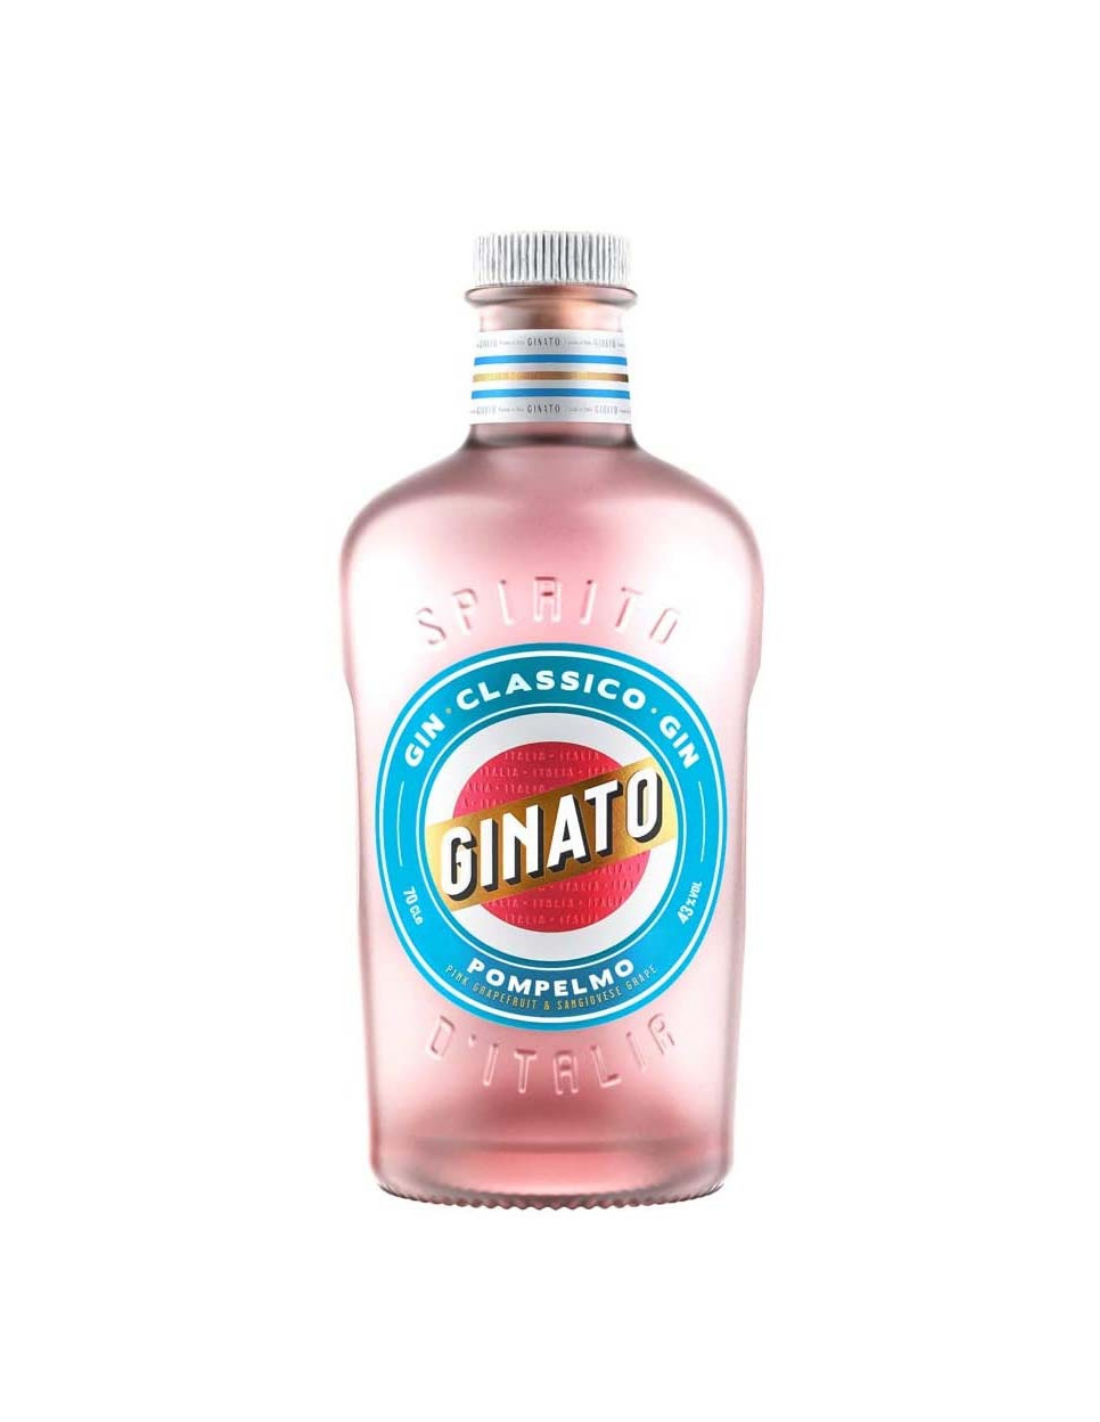 Gin Ginato Pompelmo Pink Grapefruit & Sangiovese Grape, 43% alc., 0.05L, Italia alcooldiscount.ro